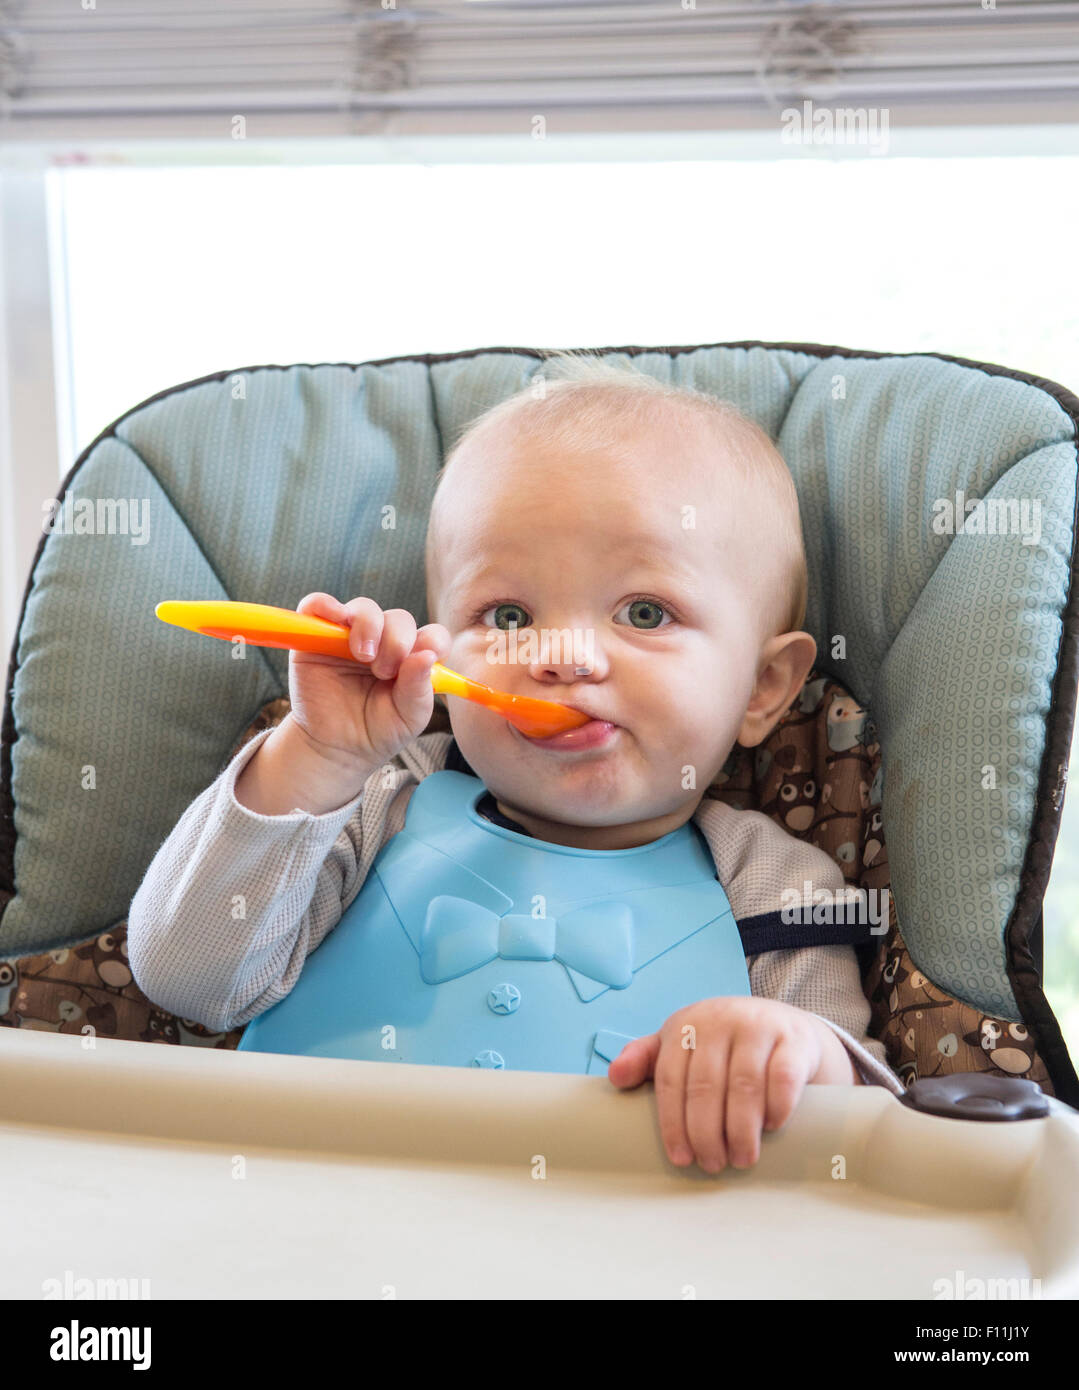 Caucasian baby boy eating dans une chaise haute Banque D'Images